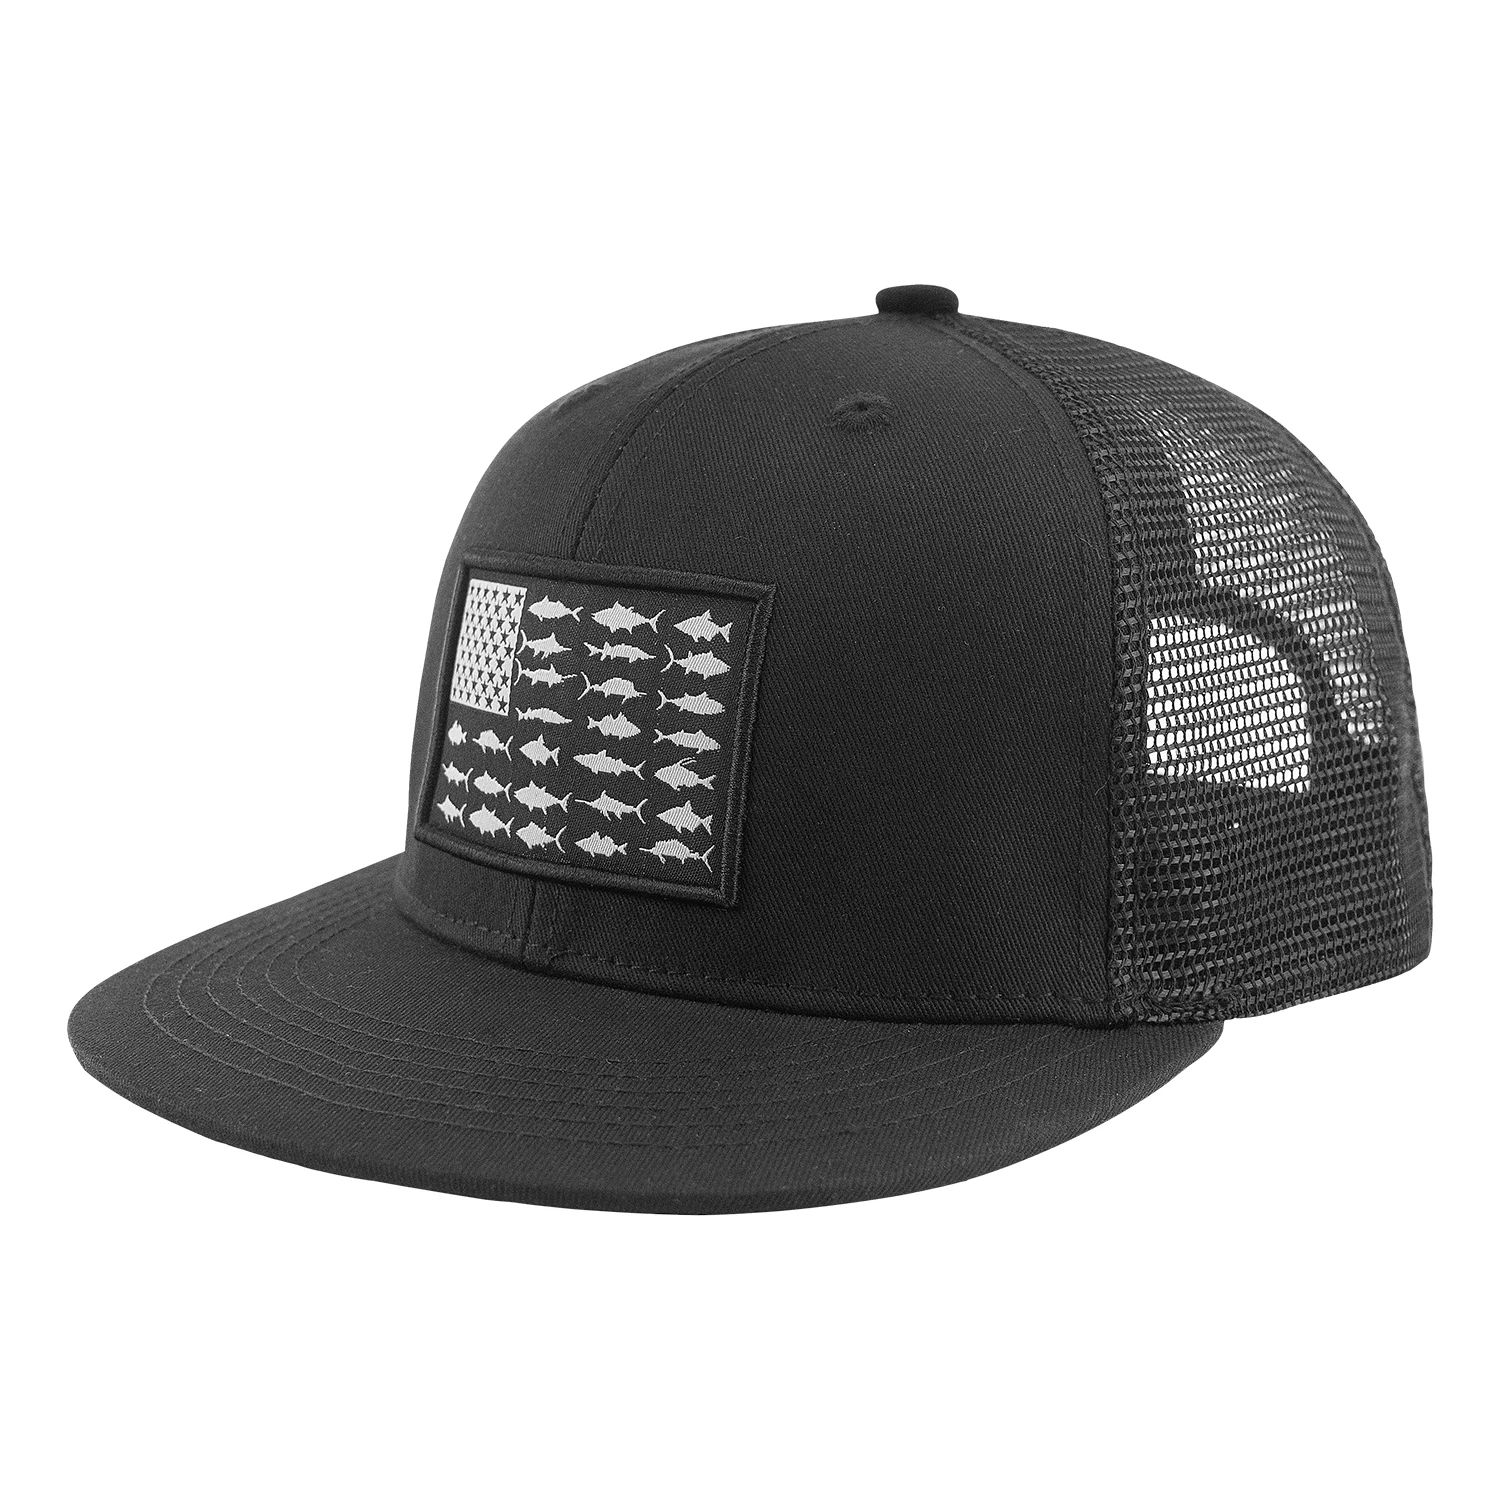 Mens W C Hip Hop S B Ey Mesh G Hats Cap Hat C $4.86 a-soap.com